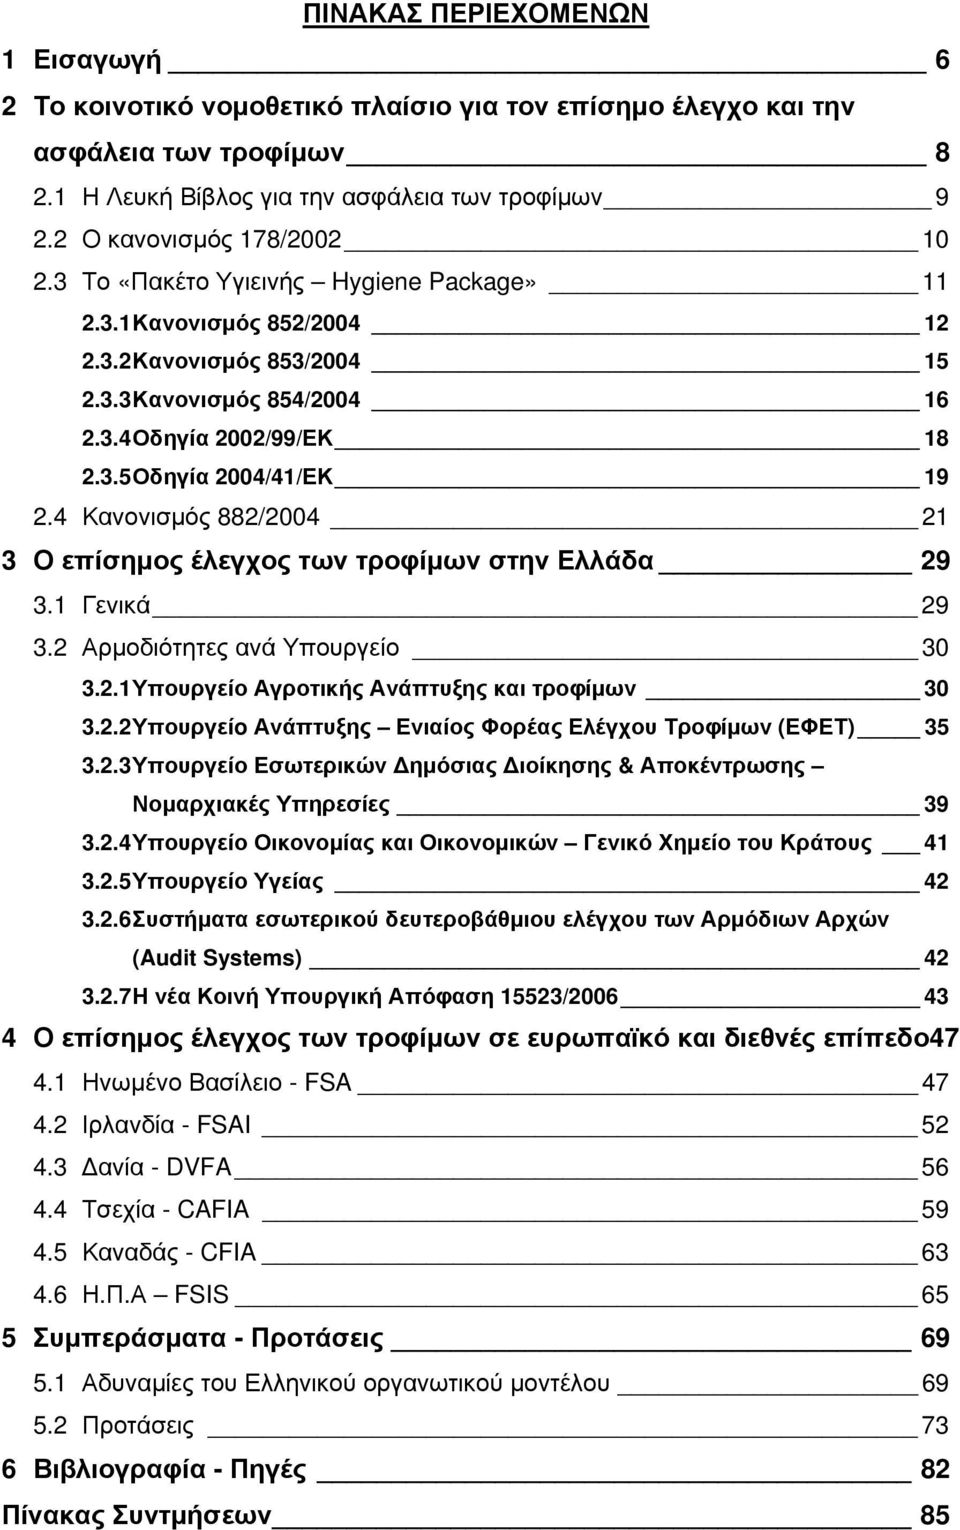 4 Κανονισμός 882/2004 21 3 Ο επίσημος έλεγχος των τροφίμων στην Ελλάδα 29 3.1 Γενικά 29 3.2 Αρμοδιότητες ανά Υπουργείο 30 3.2.1 Υπουργείο Αγροτικής Ανάπτυξης και τροφίμων 30 3.2.2 Υπουργείo Ανάπτυξης Ενιαίος Φορέας Ελέγχου Τροφίμων (ΕΦΕΤ) 35 3.